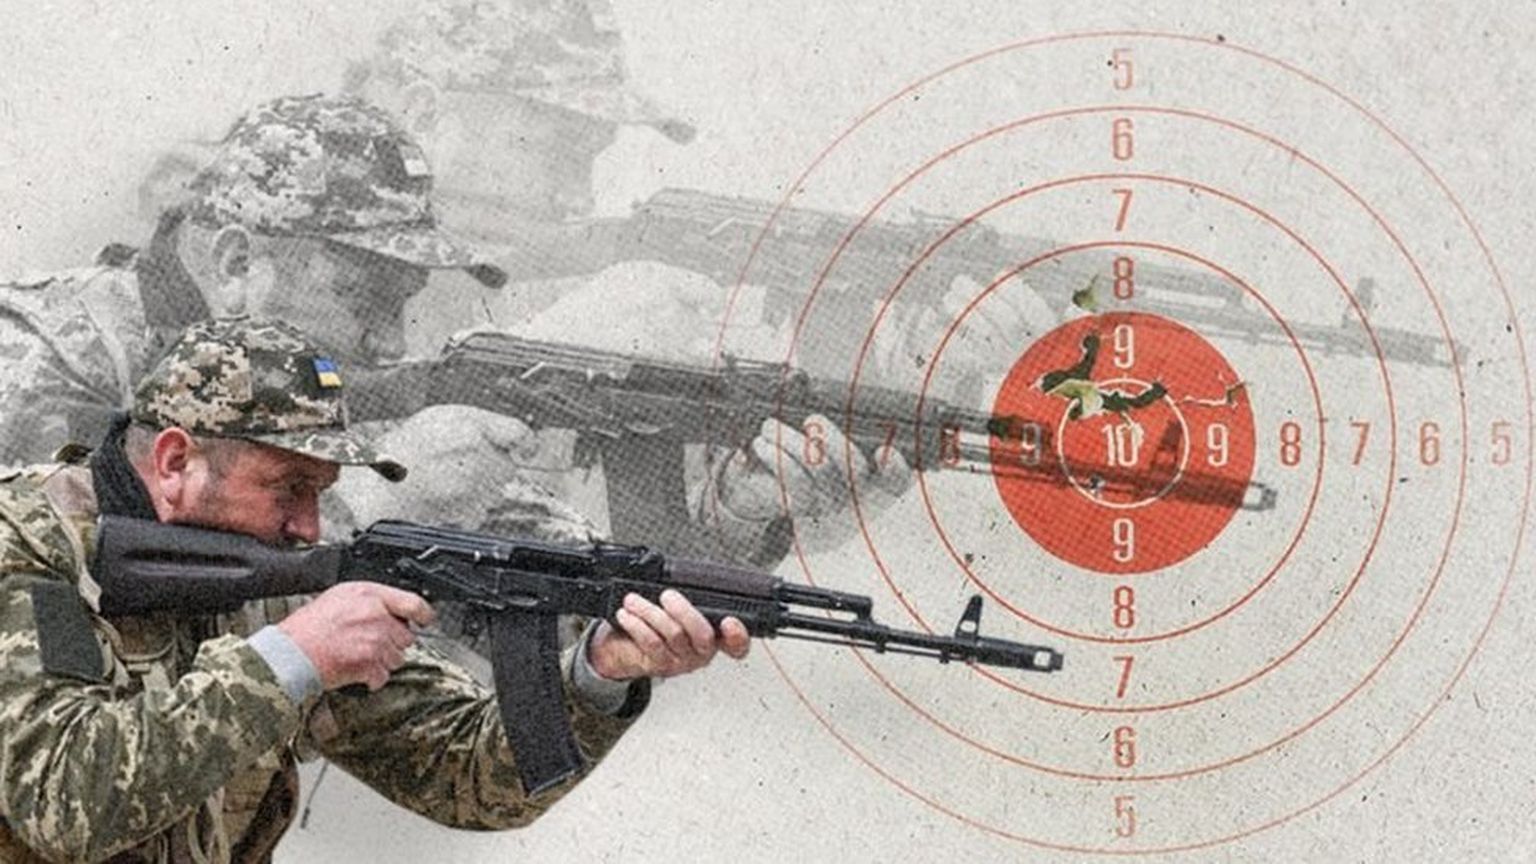 Программа подготовки стрелка из автомата АК-47 должна длиться 14 дней. Обучение другим специальностям занимает как минимум от 14 до 40 дней